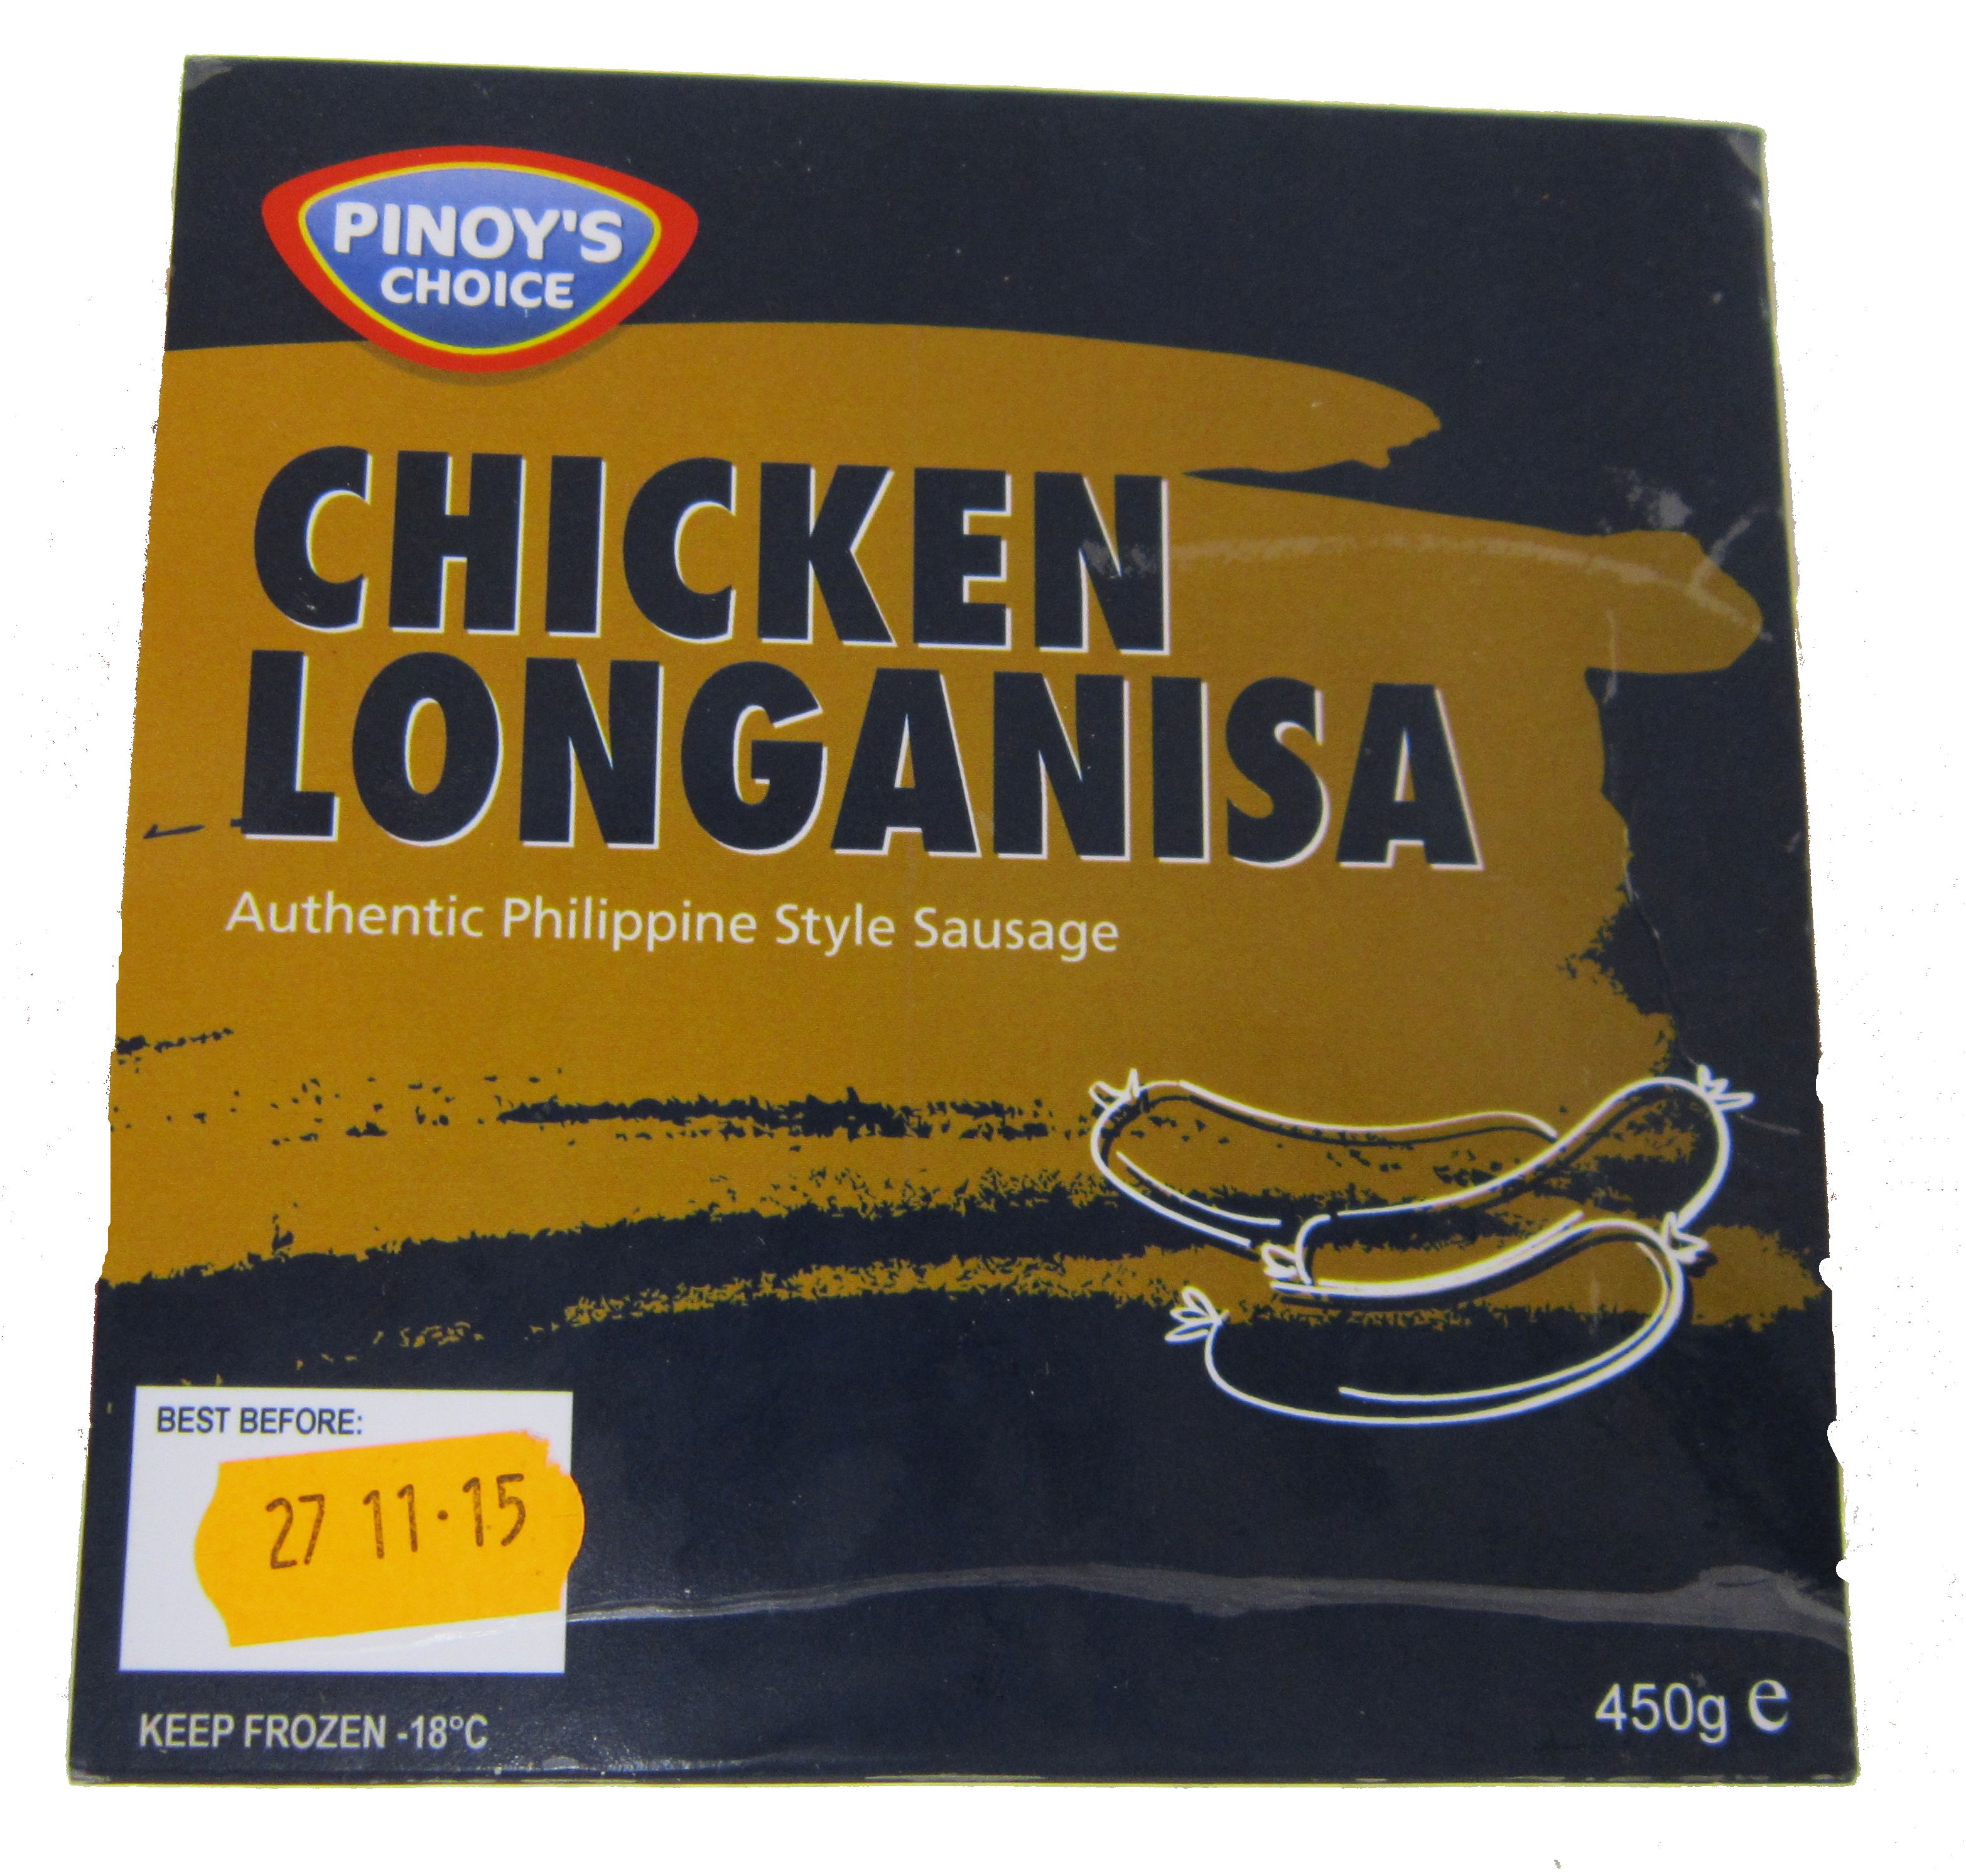 Chicken Longanisa Image